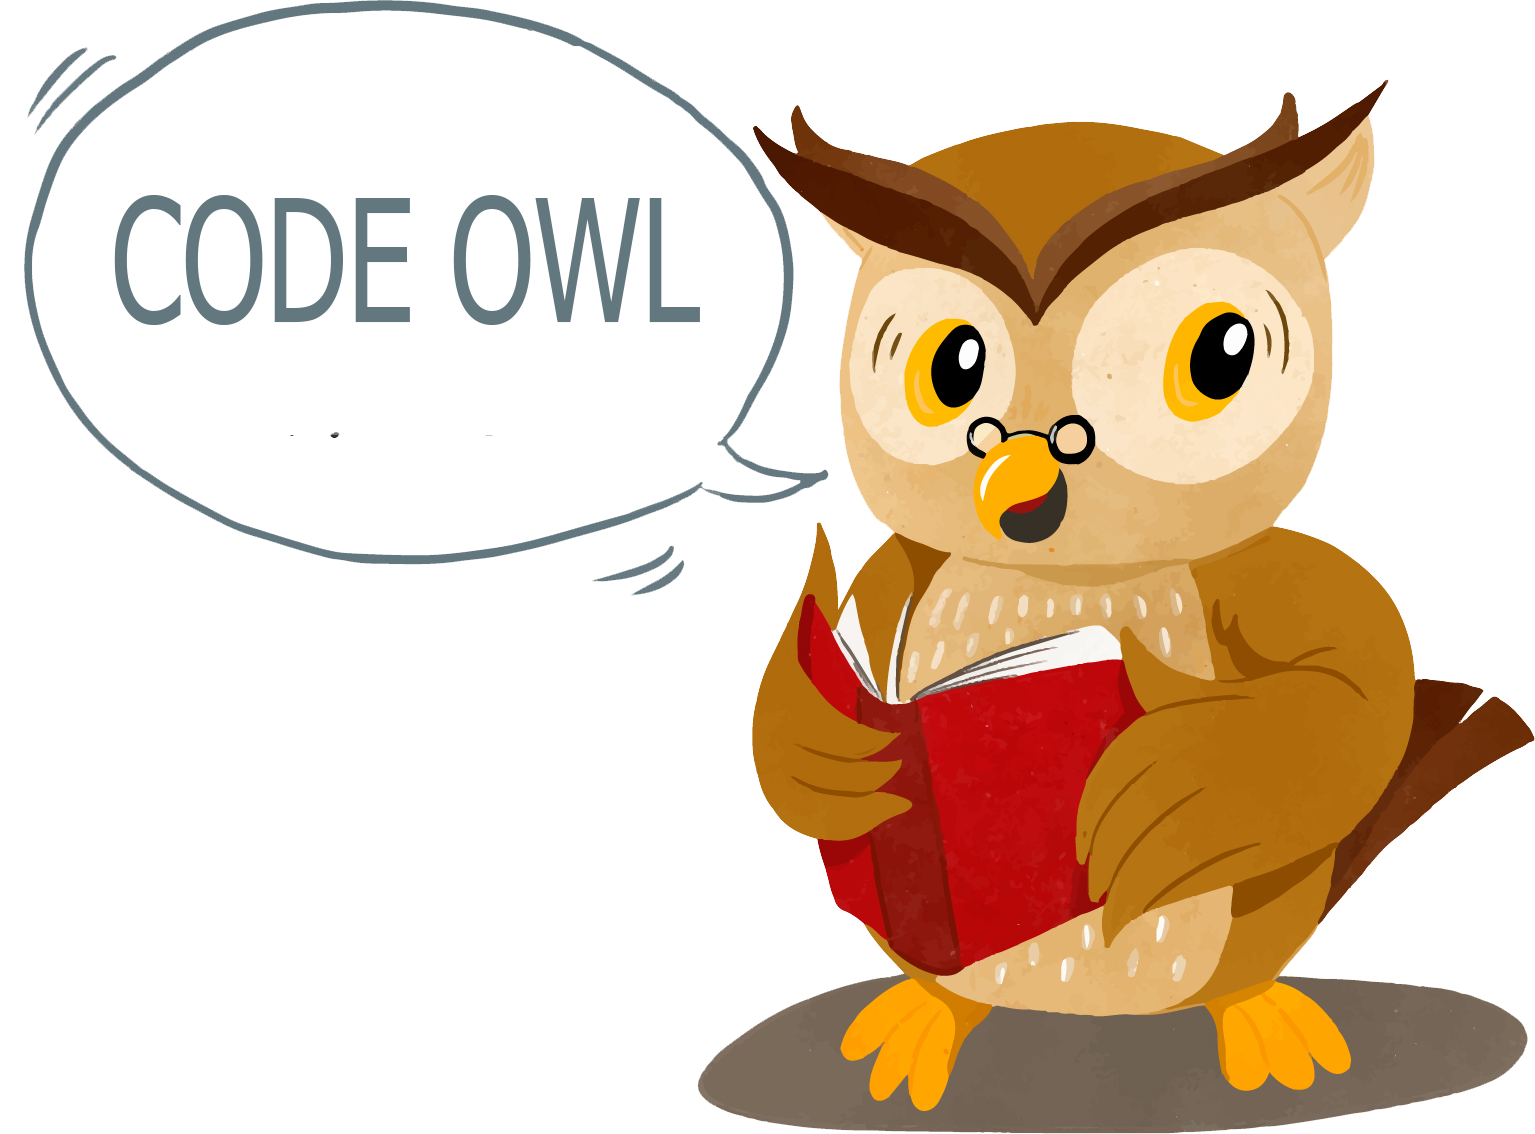 Code owl